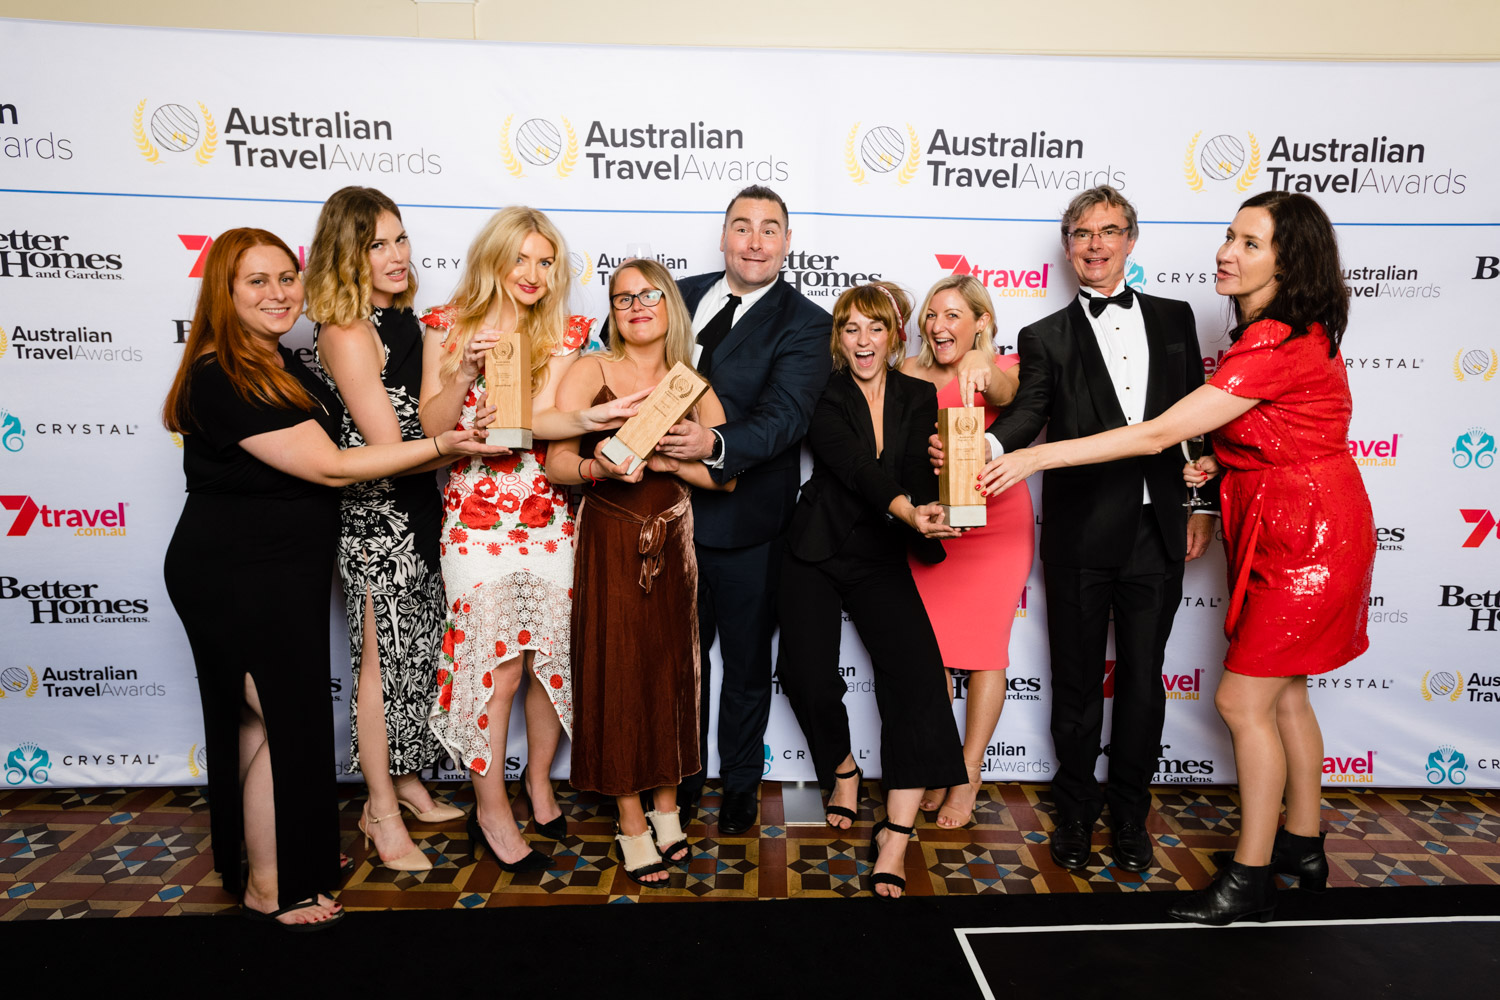 australian tourism award 2023